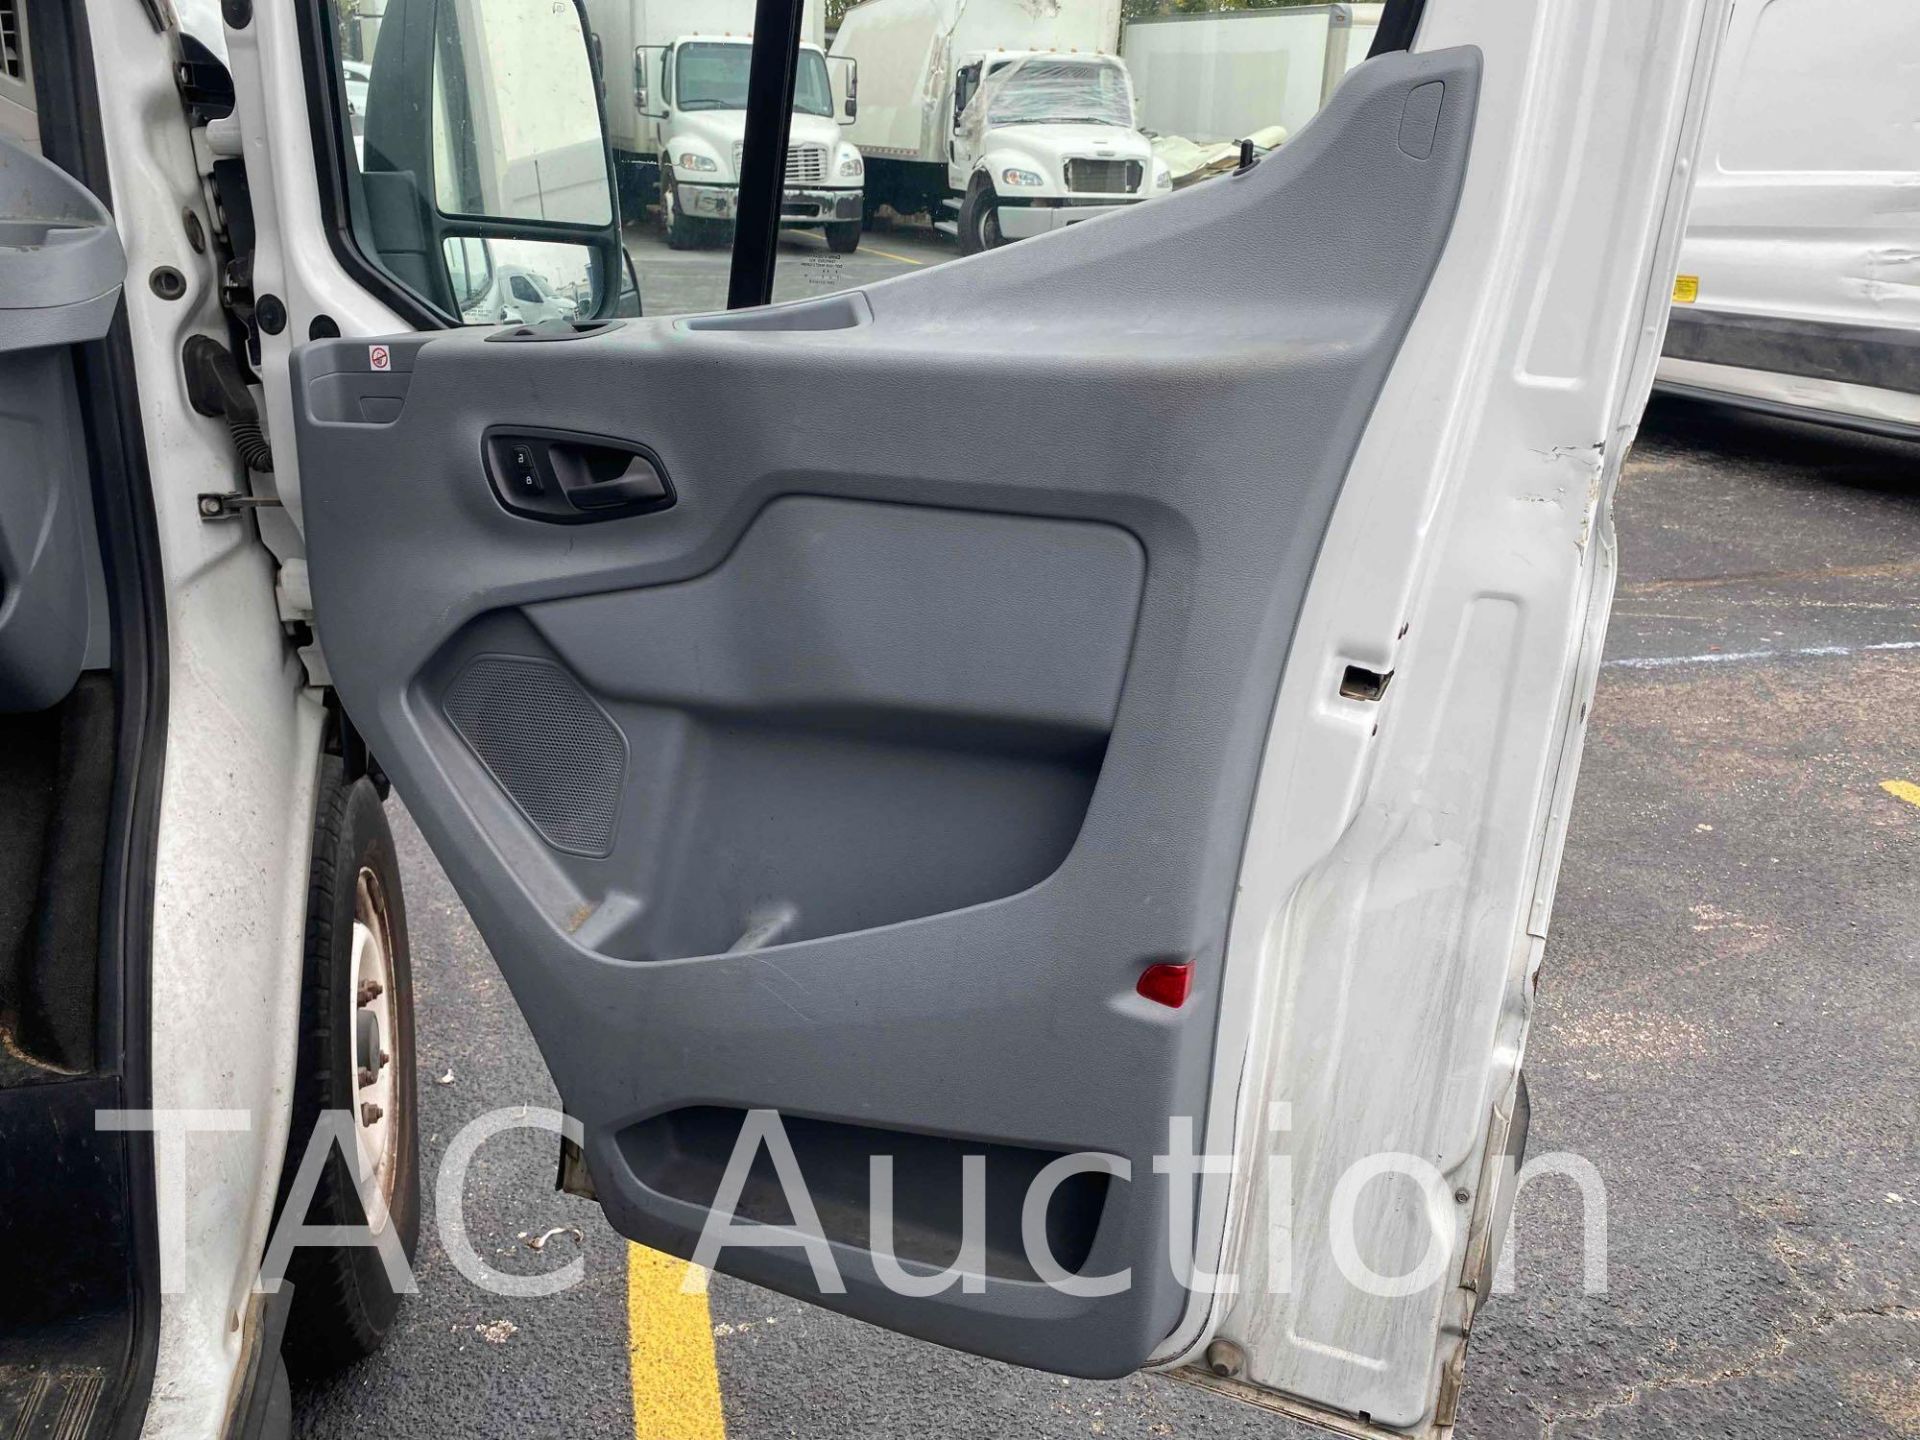 2019 Ford Transit 150 Cargo Van - Image 19 of 40